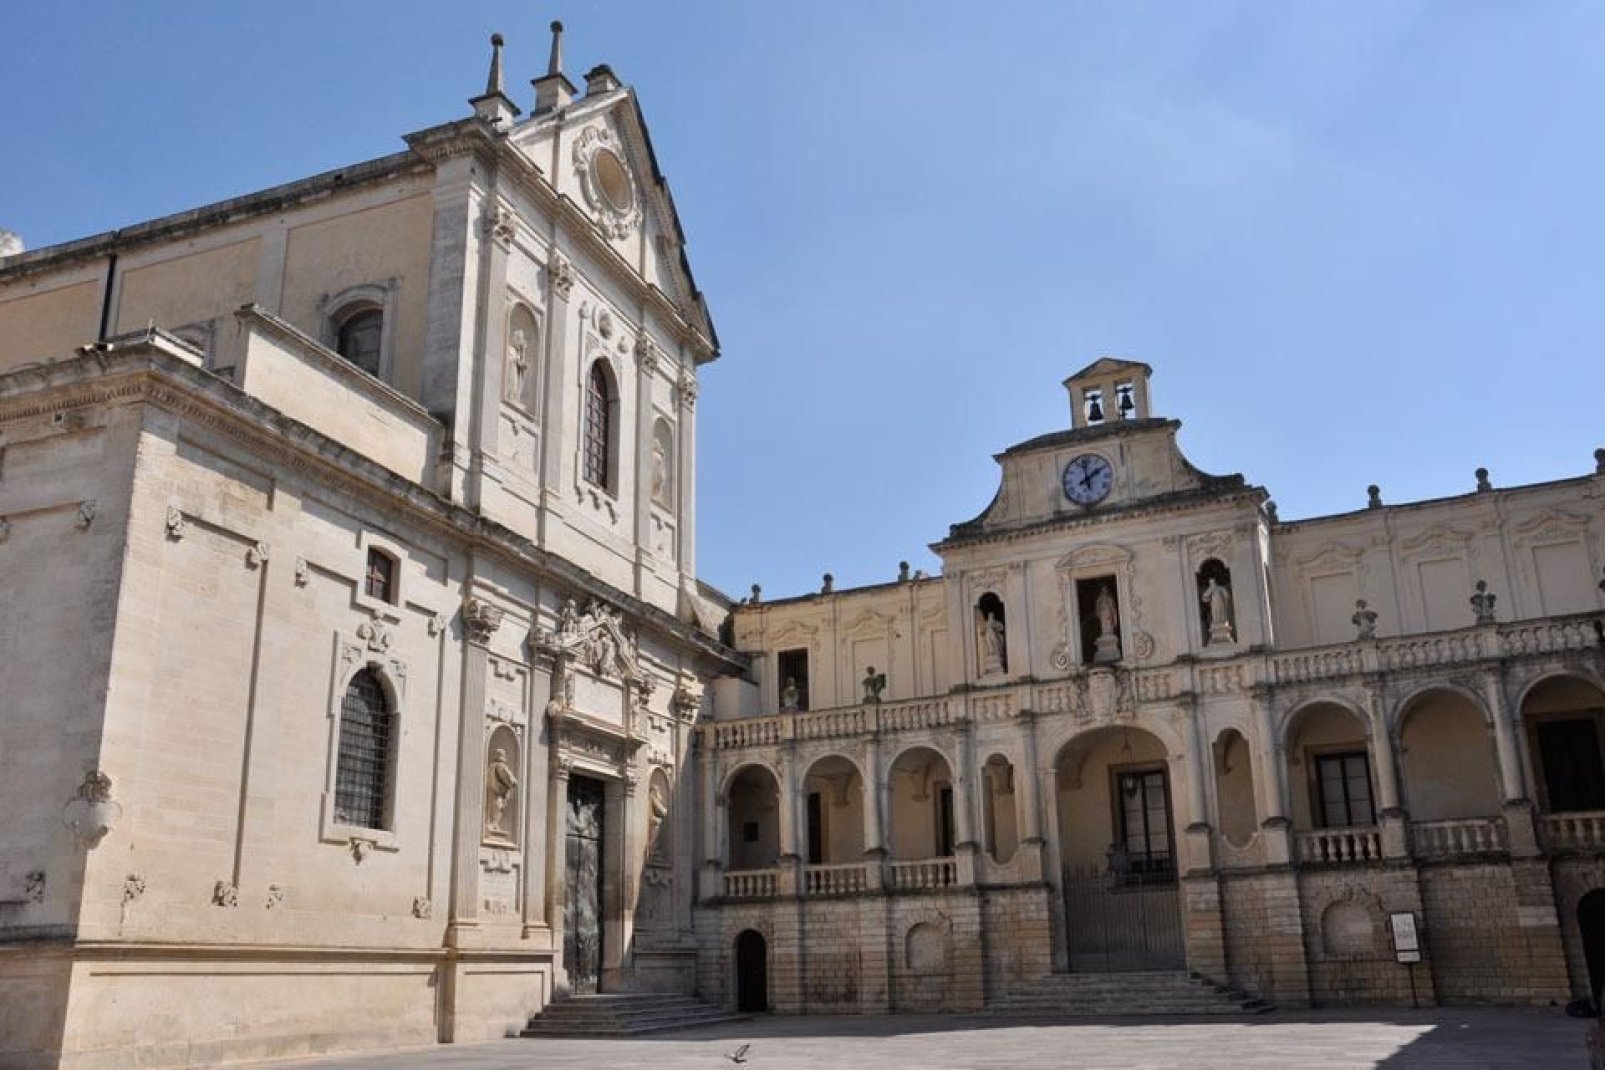 La fachada actual, una obra maestra barroca, fue realizada en 1758 por Emanuele Manieri.